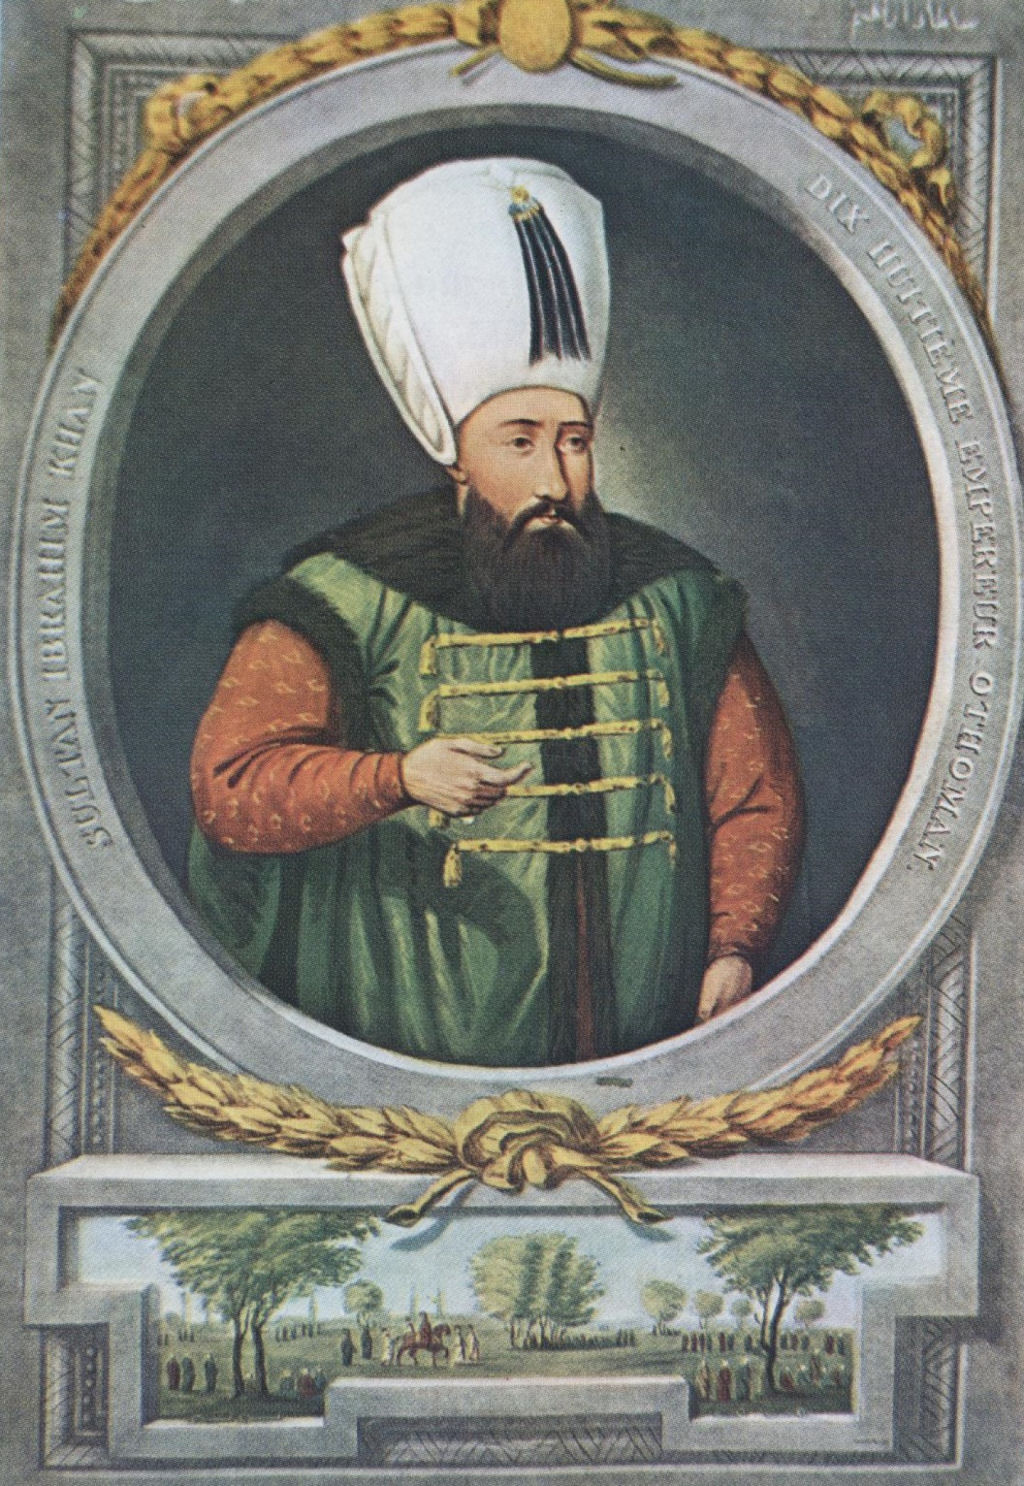 Os sultões otomanos que quase enlouqueceram por serem criados em 'gaiolas'